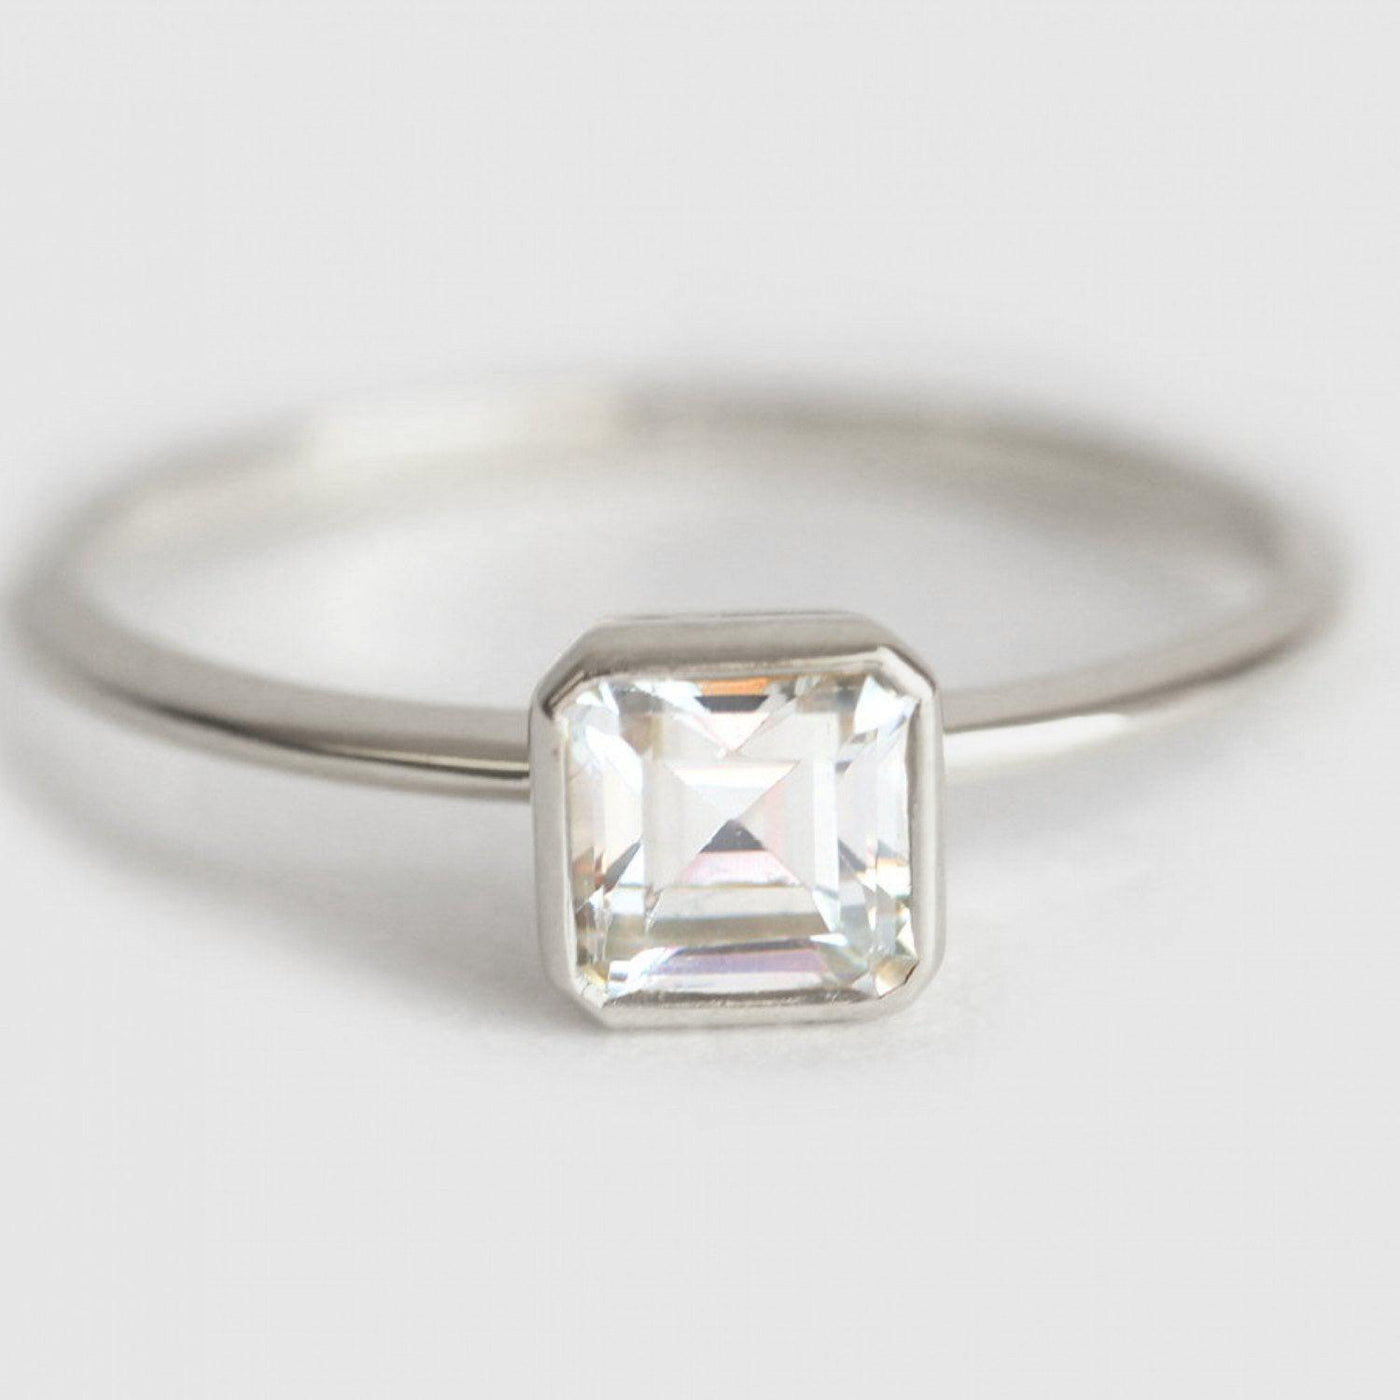 Rare Asscher Cut White Diamond Solitaire Bezel Setting Ring